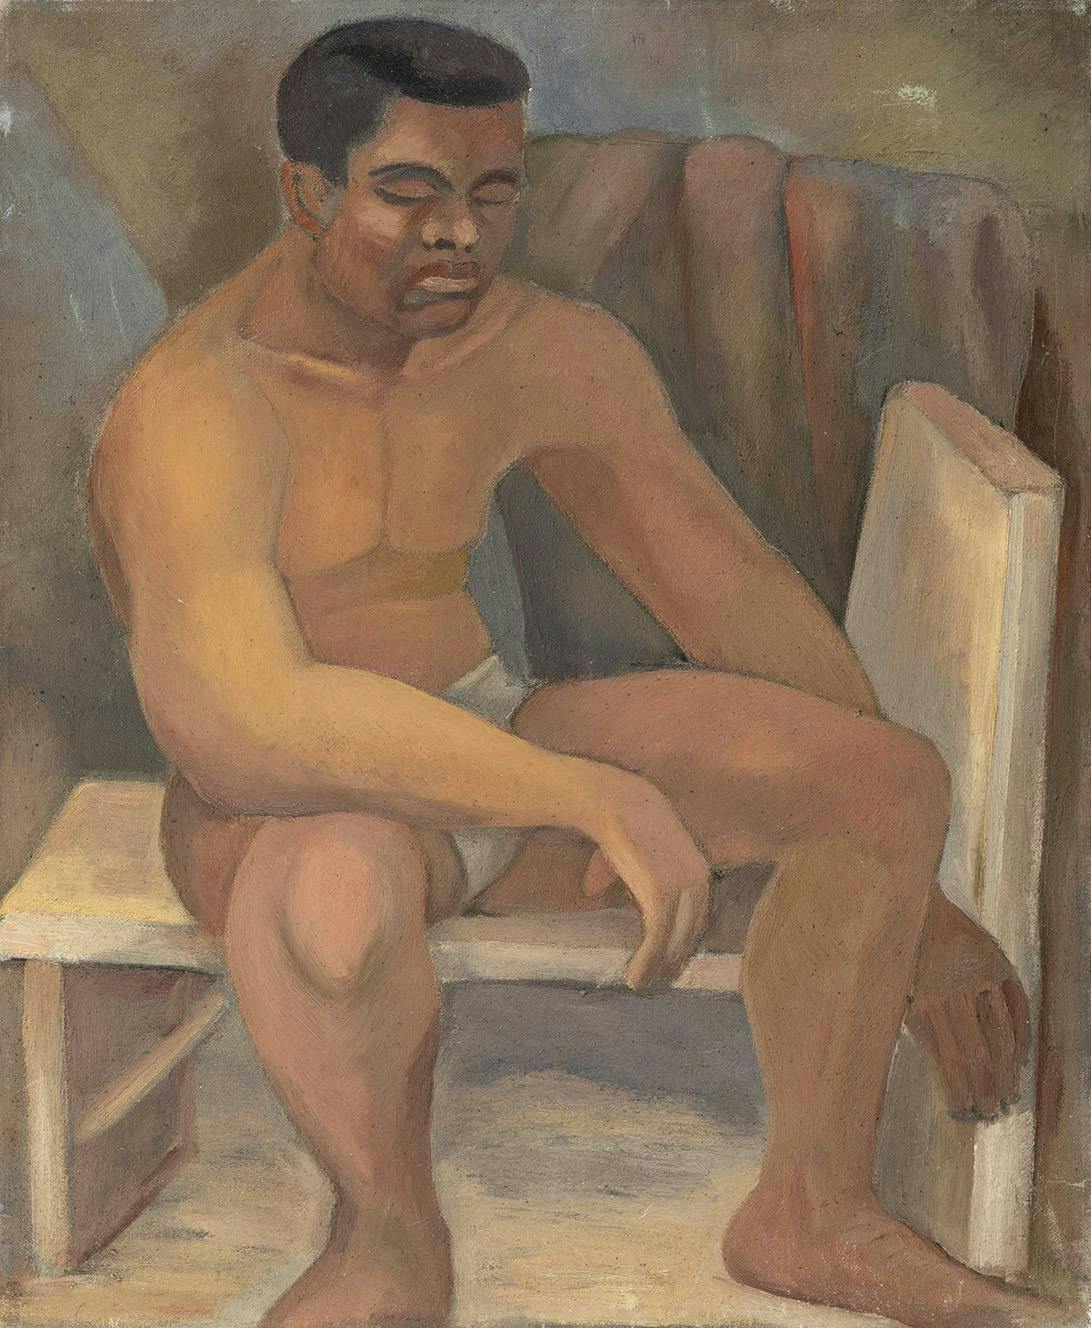 Seated on Stool, oil on canvas